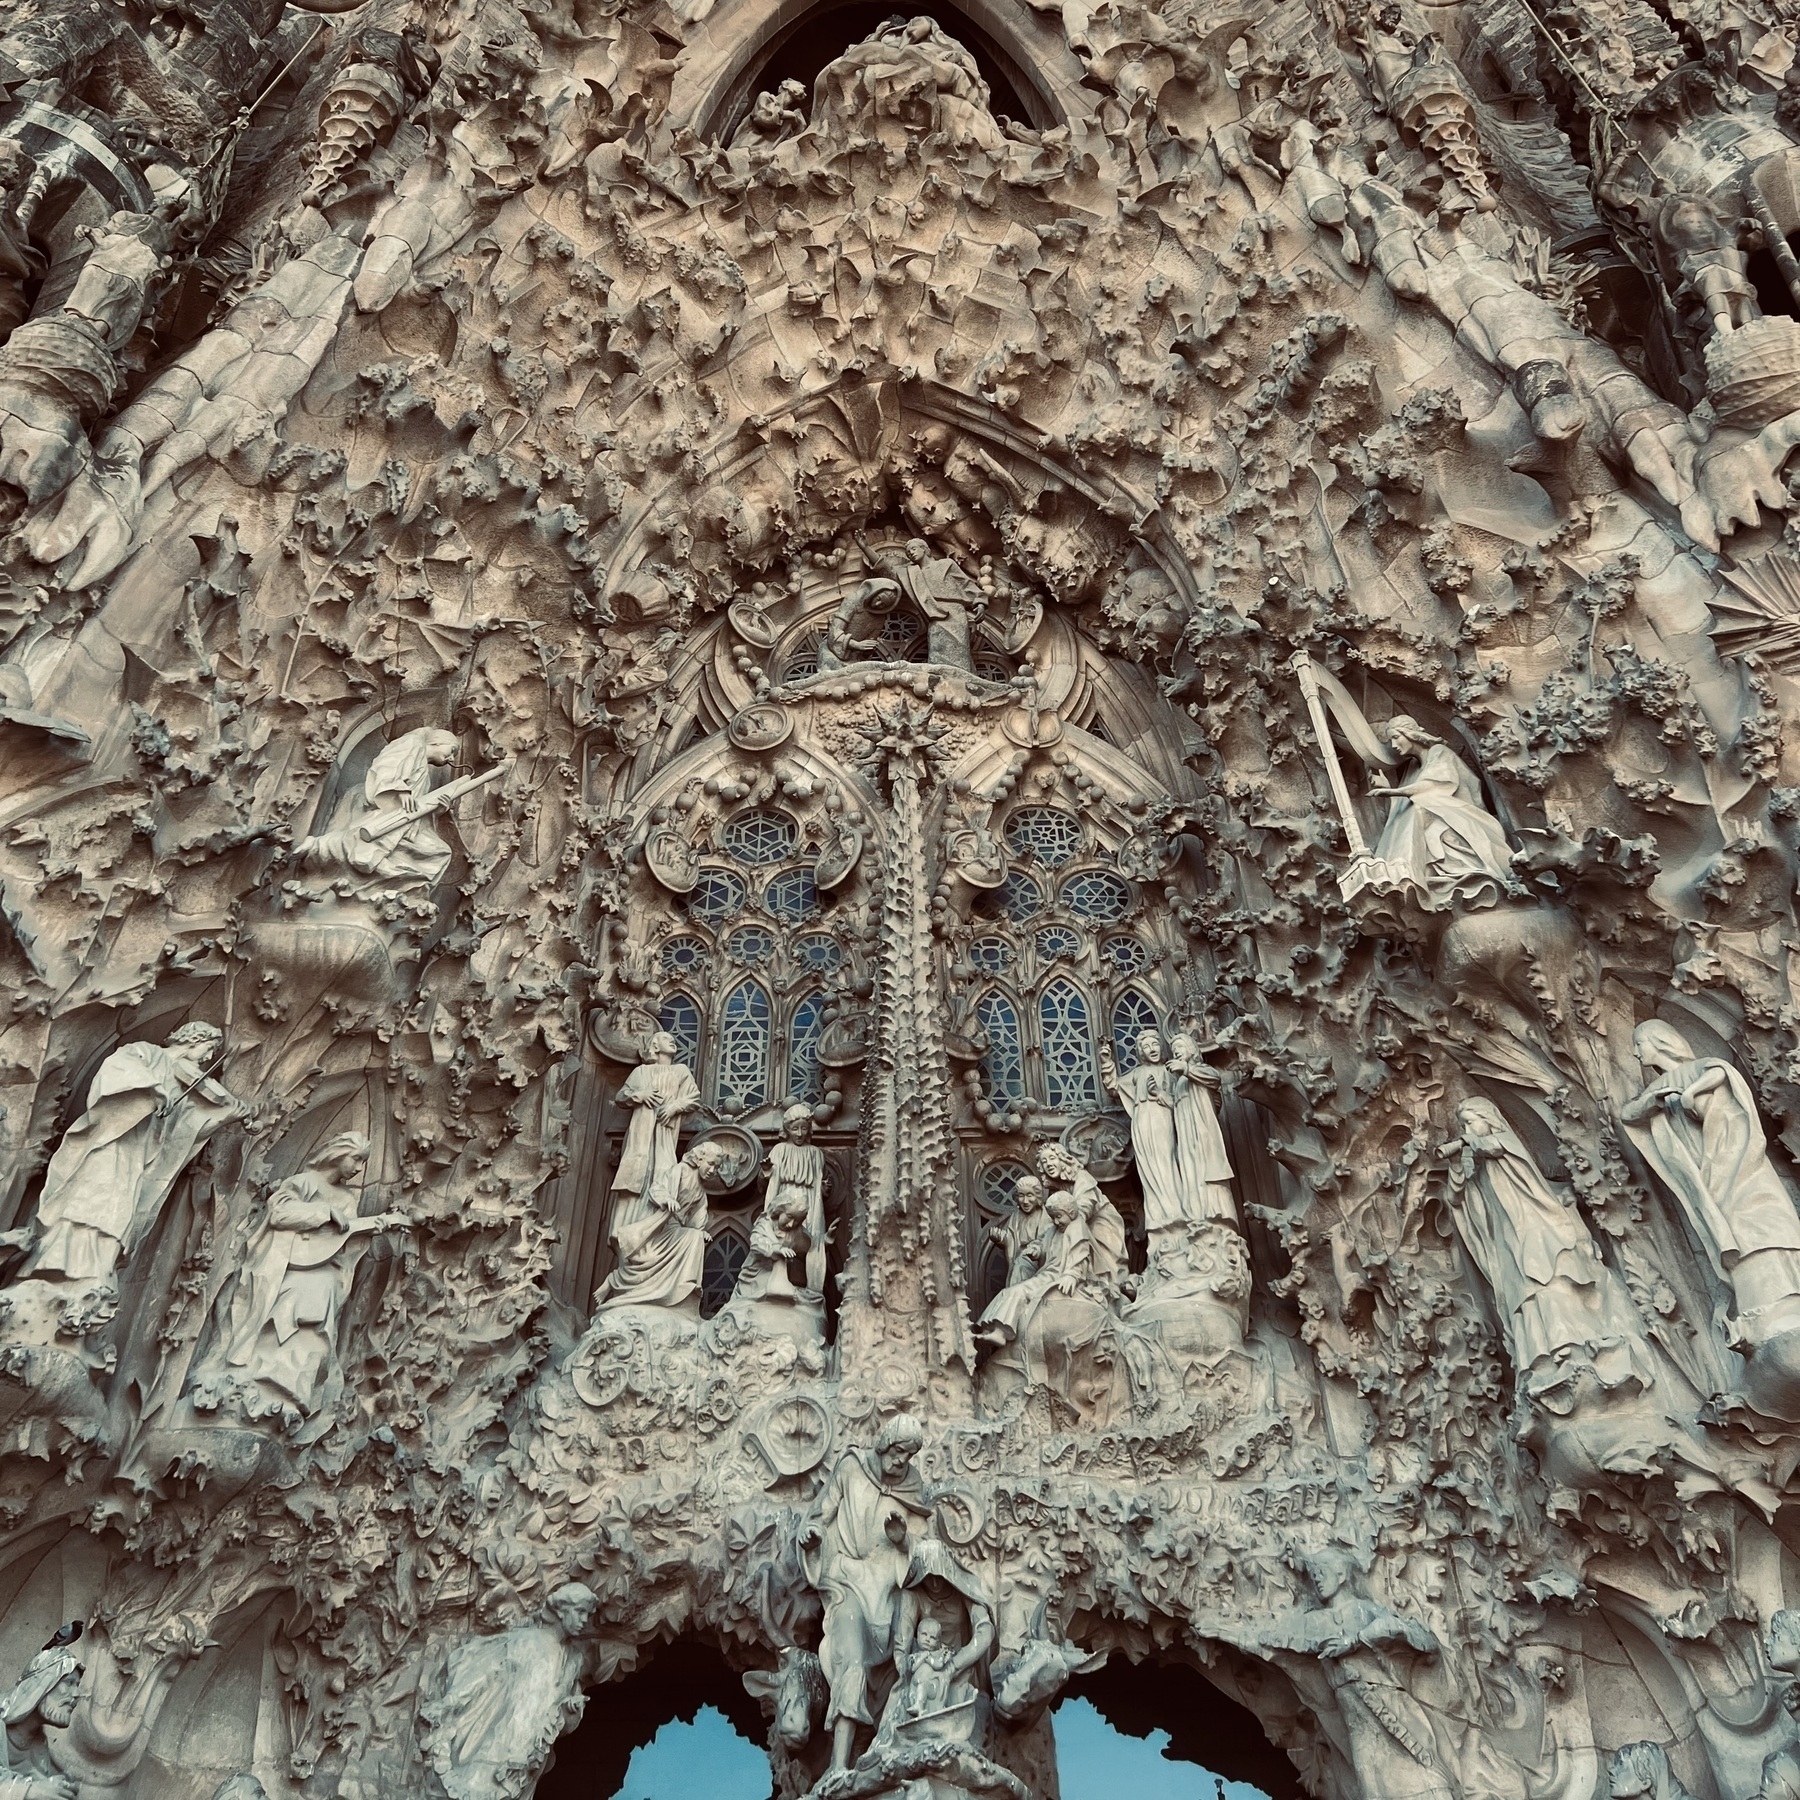 Ornate stone carving on the facade of Sagrada Familia.